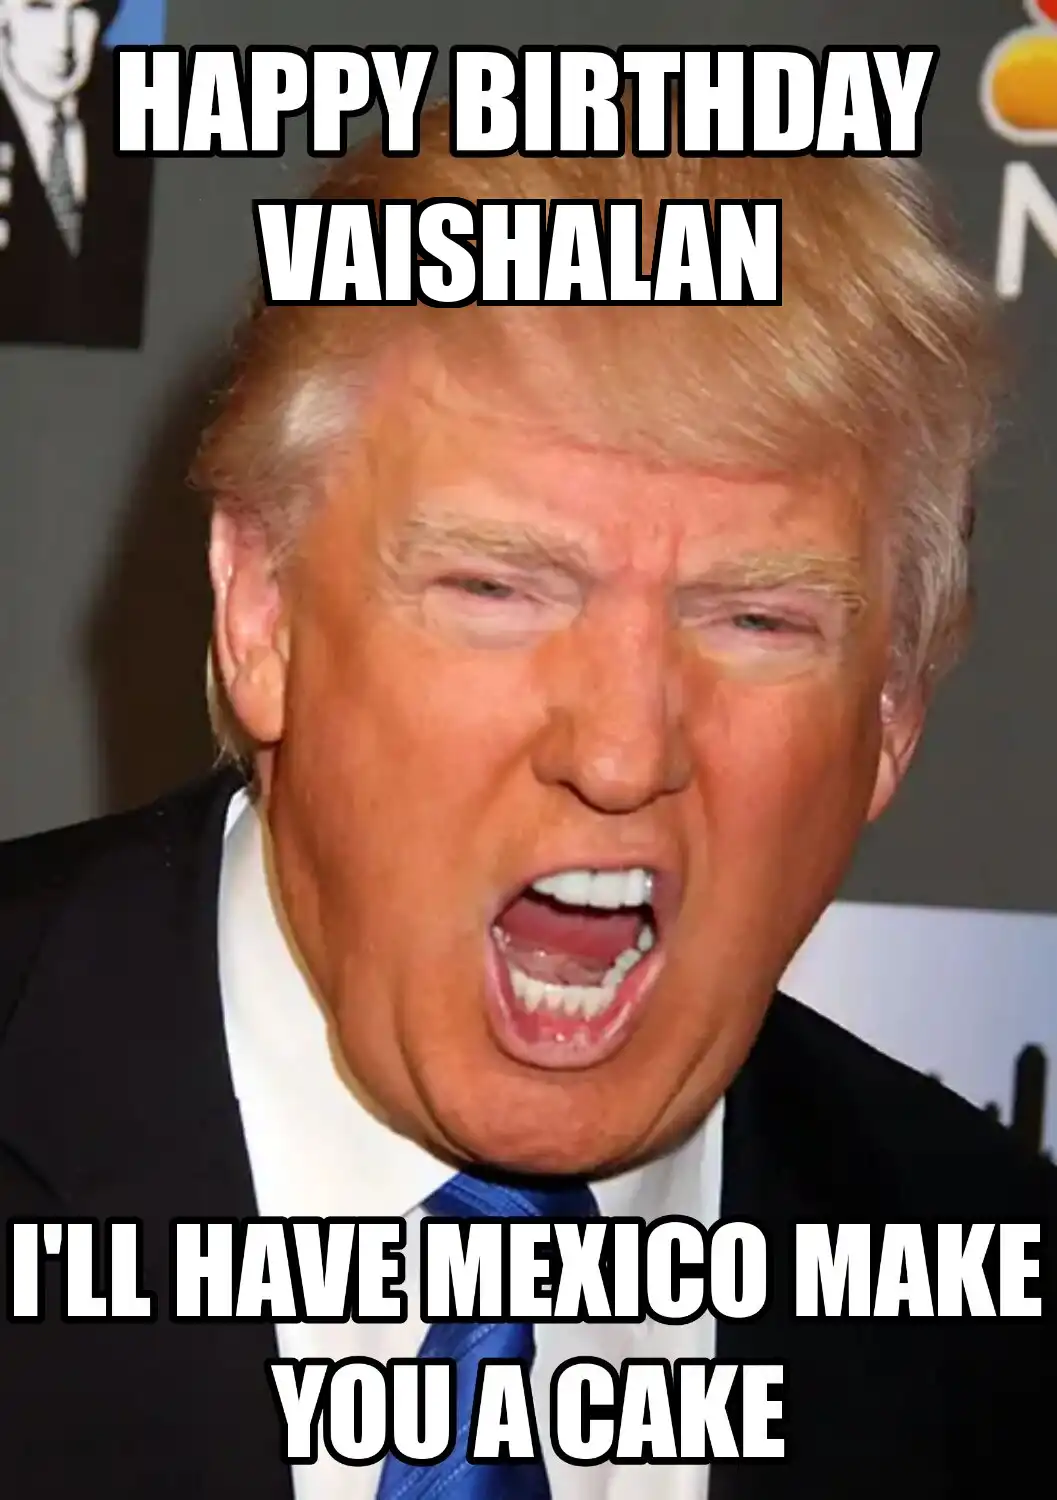 Happy Birthday Vaishalan Mexico Make You A Cake Meme